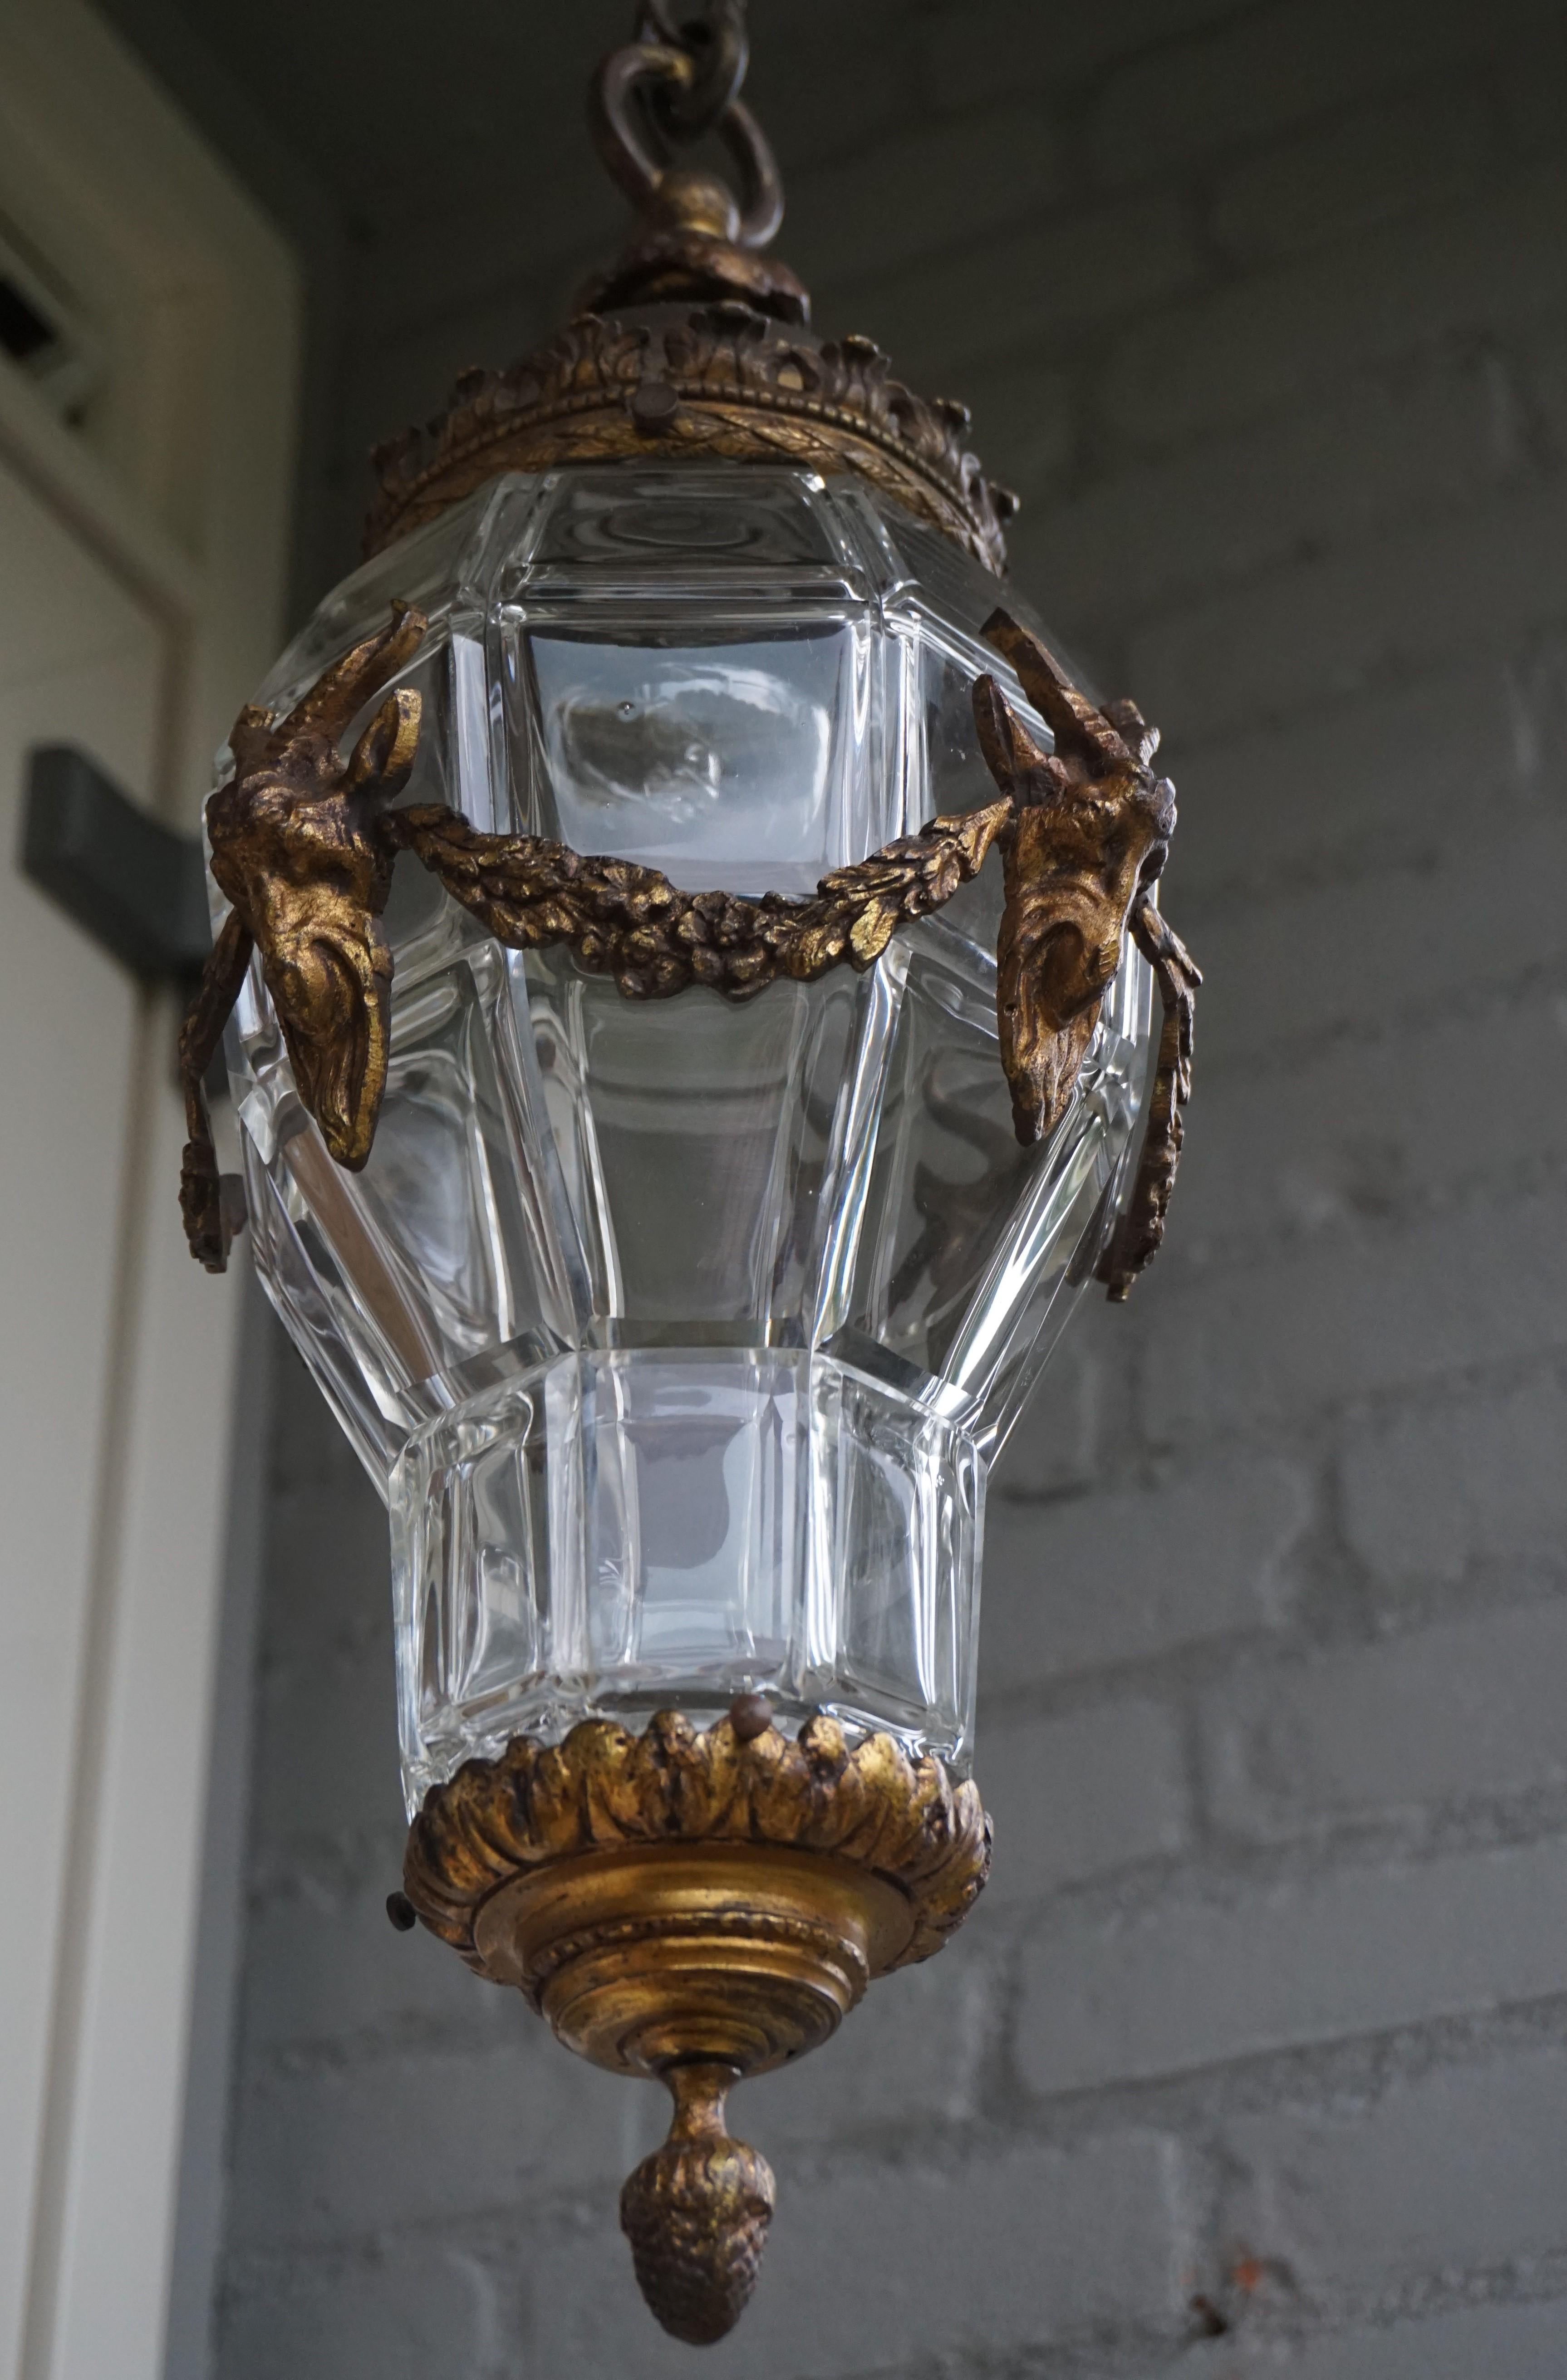 Rare et de grand style, ce luminaire d'entrée en bronze doré et en verre.

Dans les premiers temps de l'éclairage électrique, les designers travaillaient en étroite collaboration avec les artistes et les artisans et, ensemble, ils ont créé certains